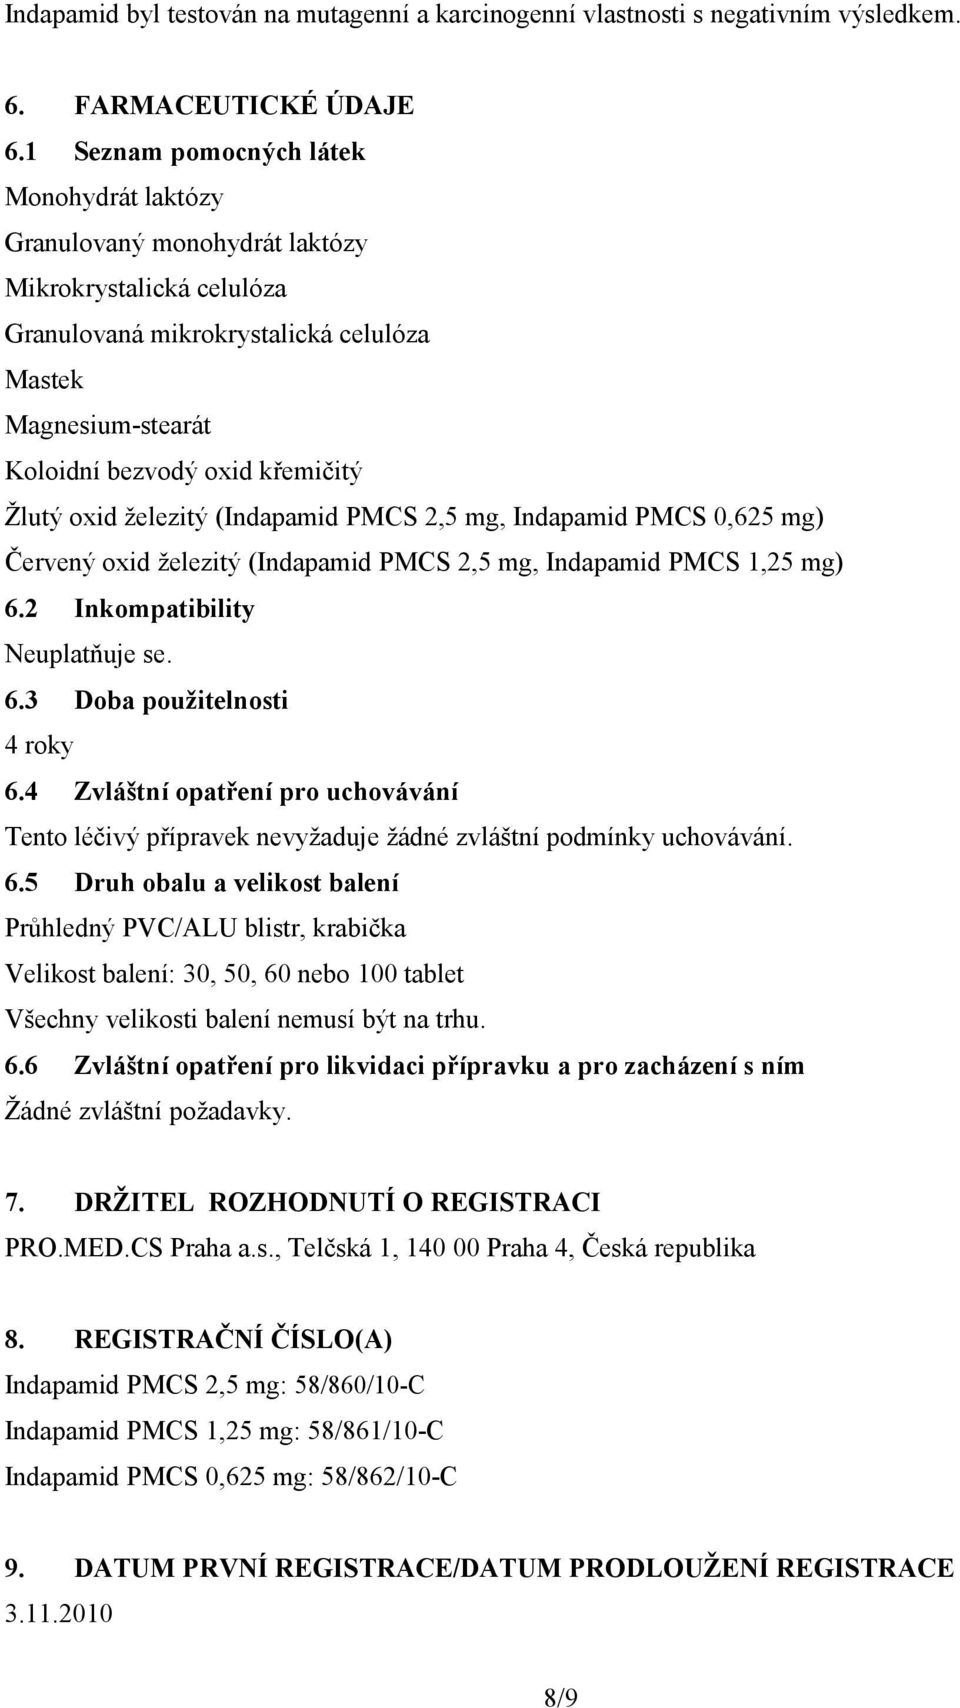 Žlutý oxid železitý (Indapamid PMCS 2,5 mg, Indapamid PMCS 0,625 mg) Červený oxid železitý (Indapamid PMCS 2,5 mg, Indapamid PMCS 1,25 mg) 6.2 Inkompatibility Neuplatňuje se. 6.3 Doba použitelnosti 4 roky 6.